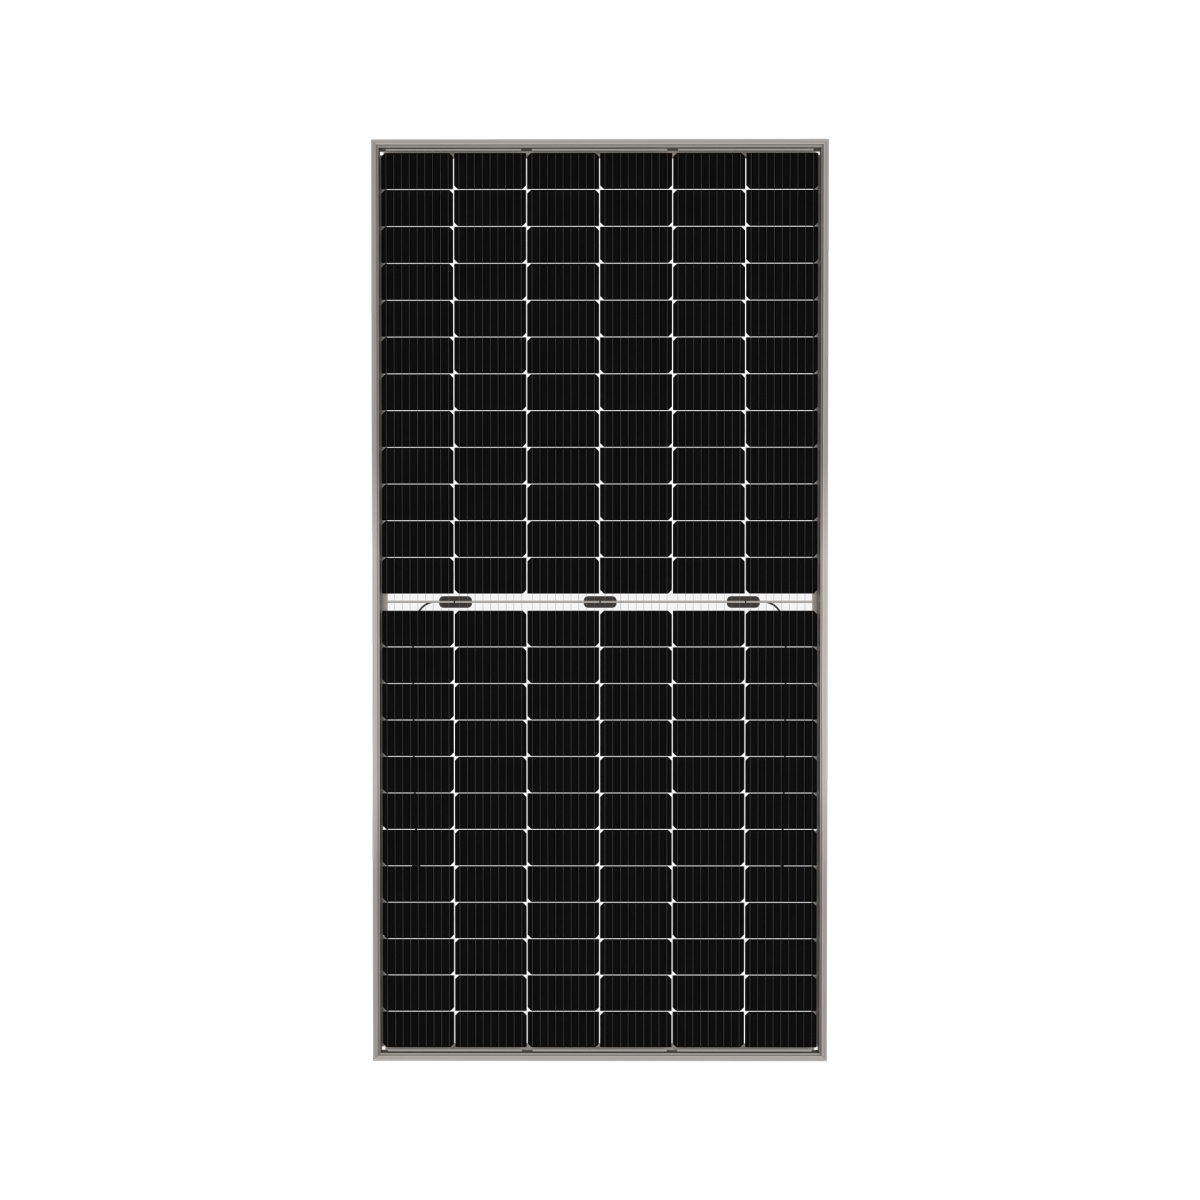 TommaTech 425Wp M6 144PM Cells Bifacial Half-Cut MB Solar Panel